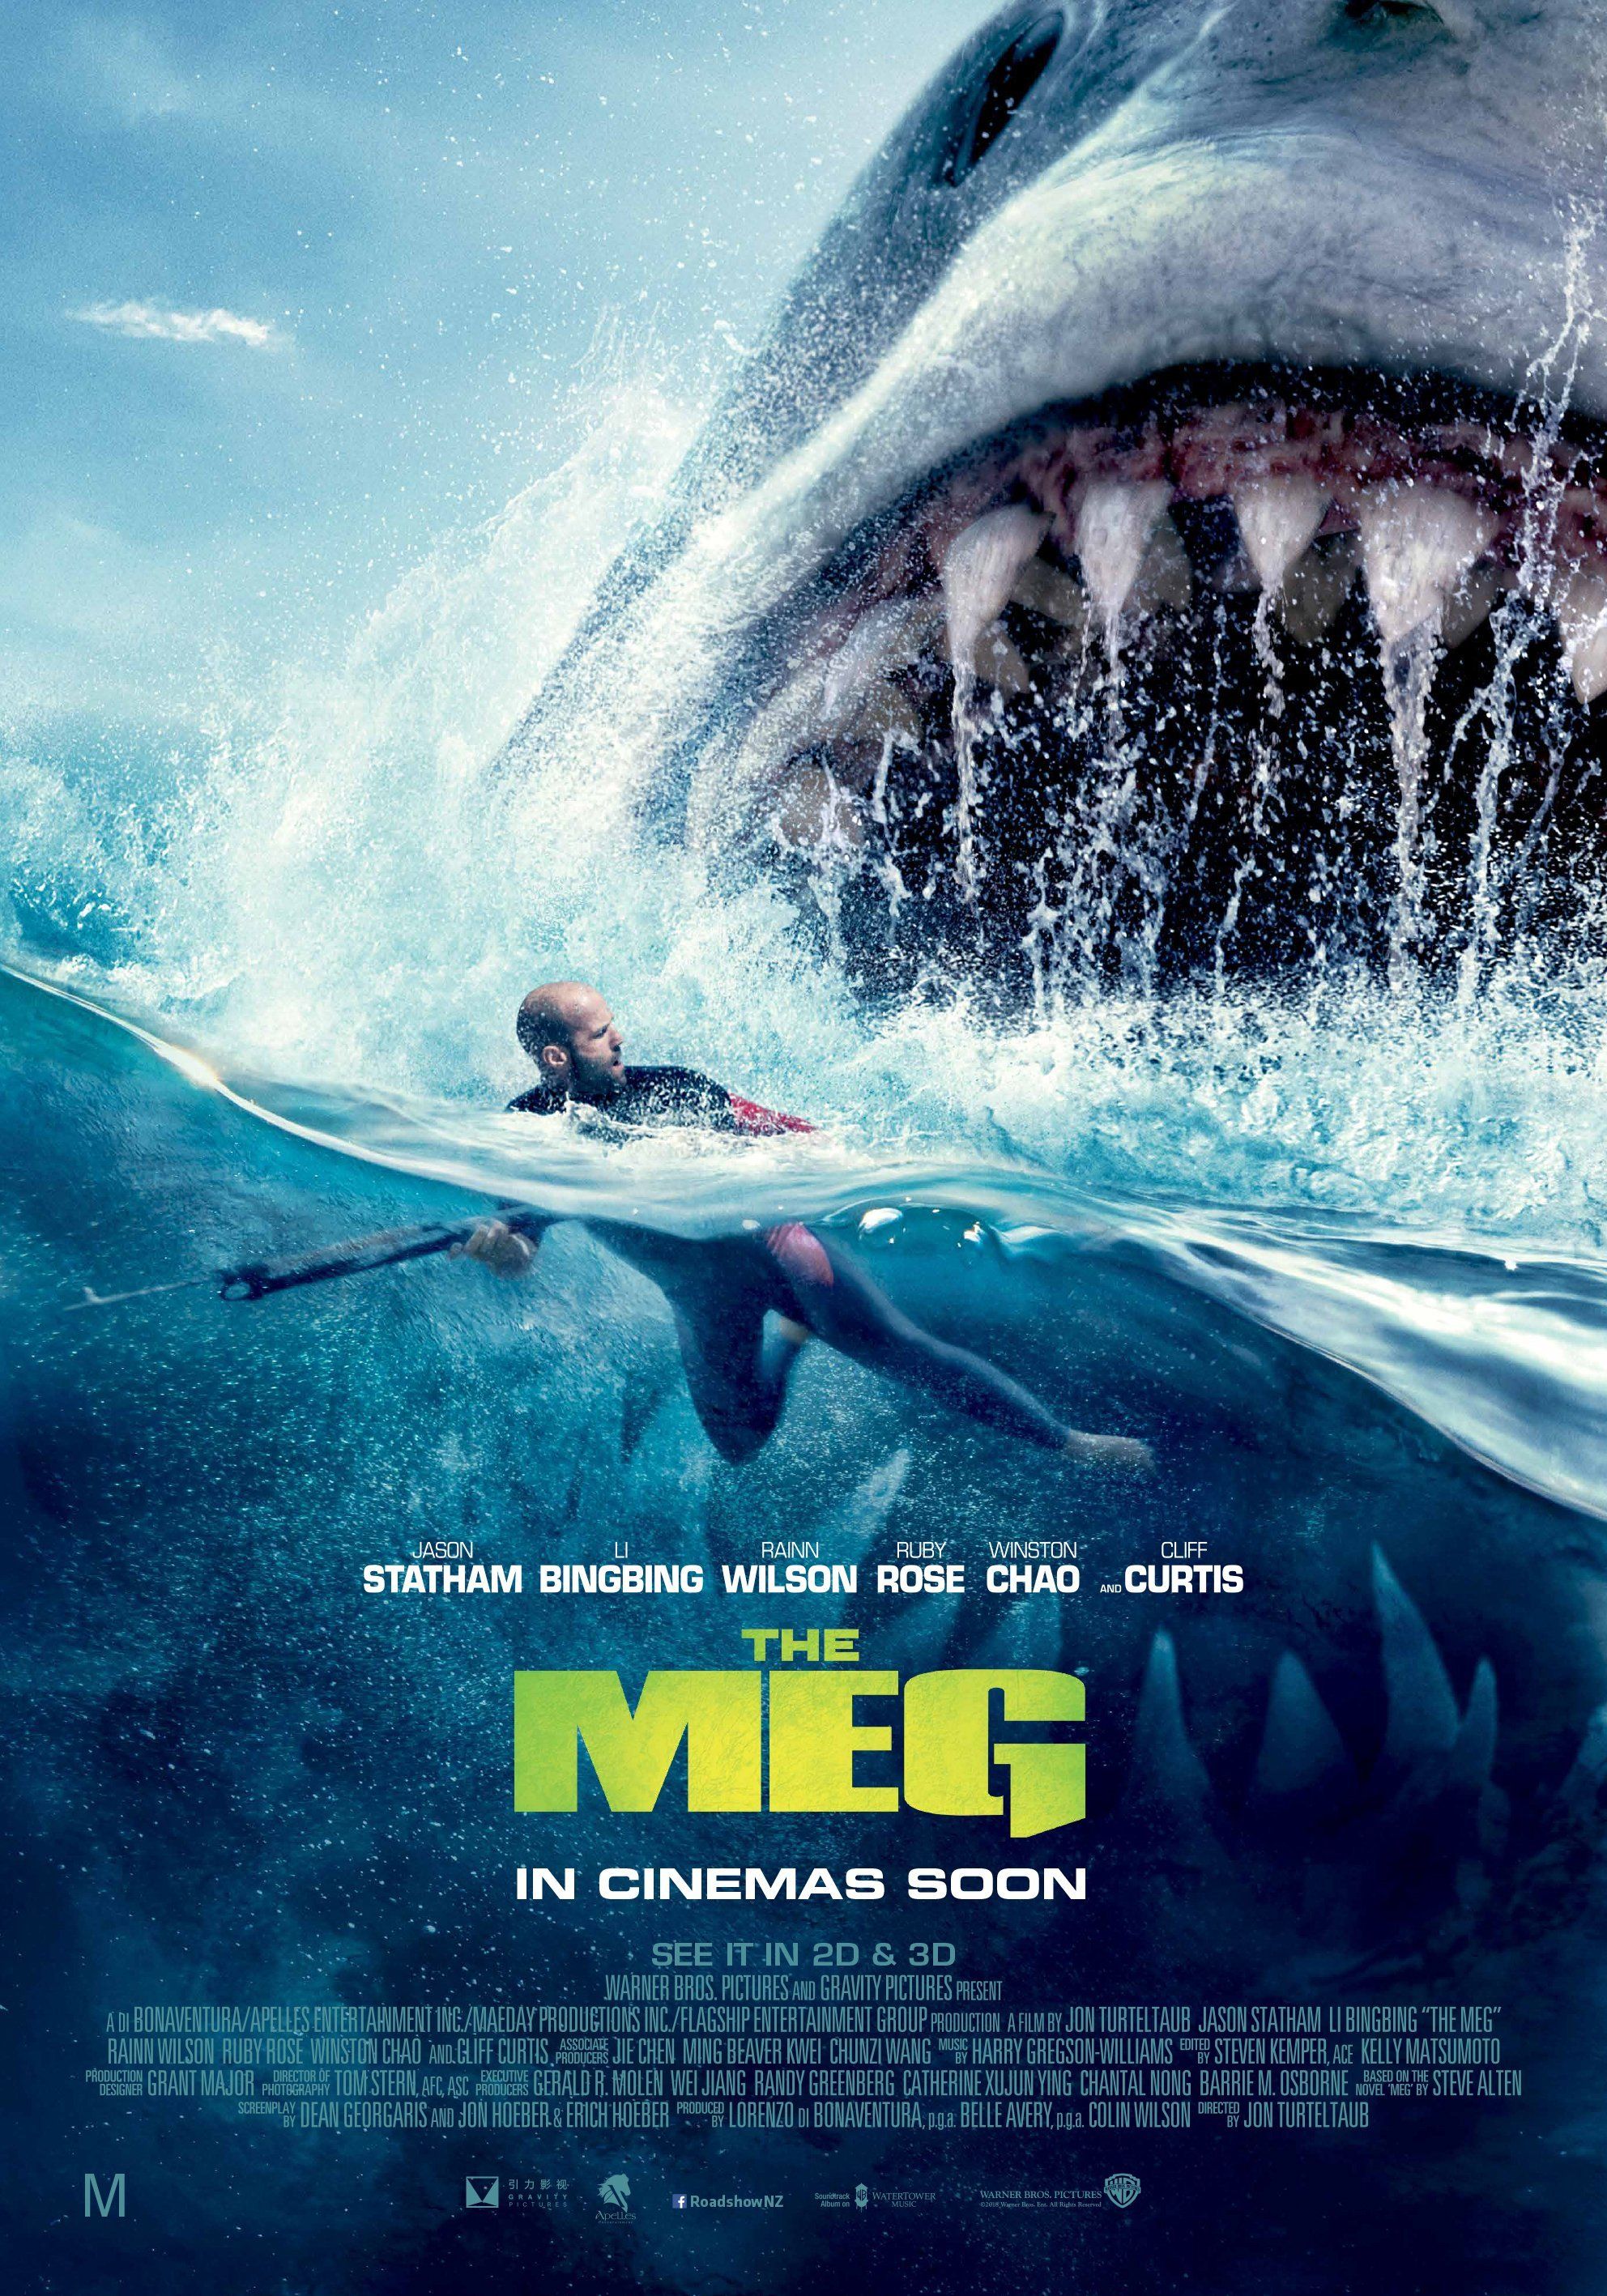 Meg's poster